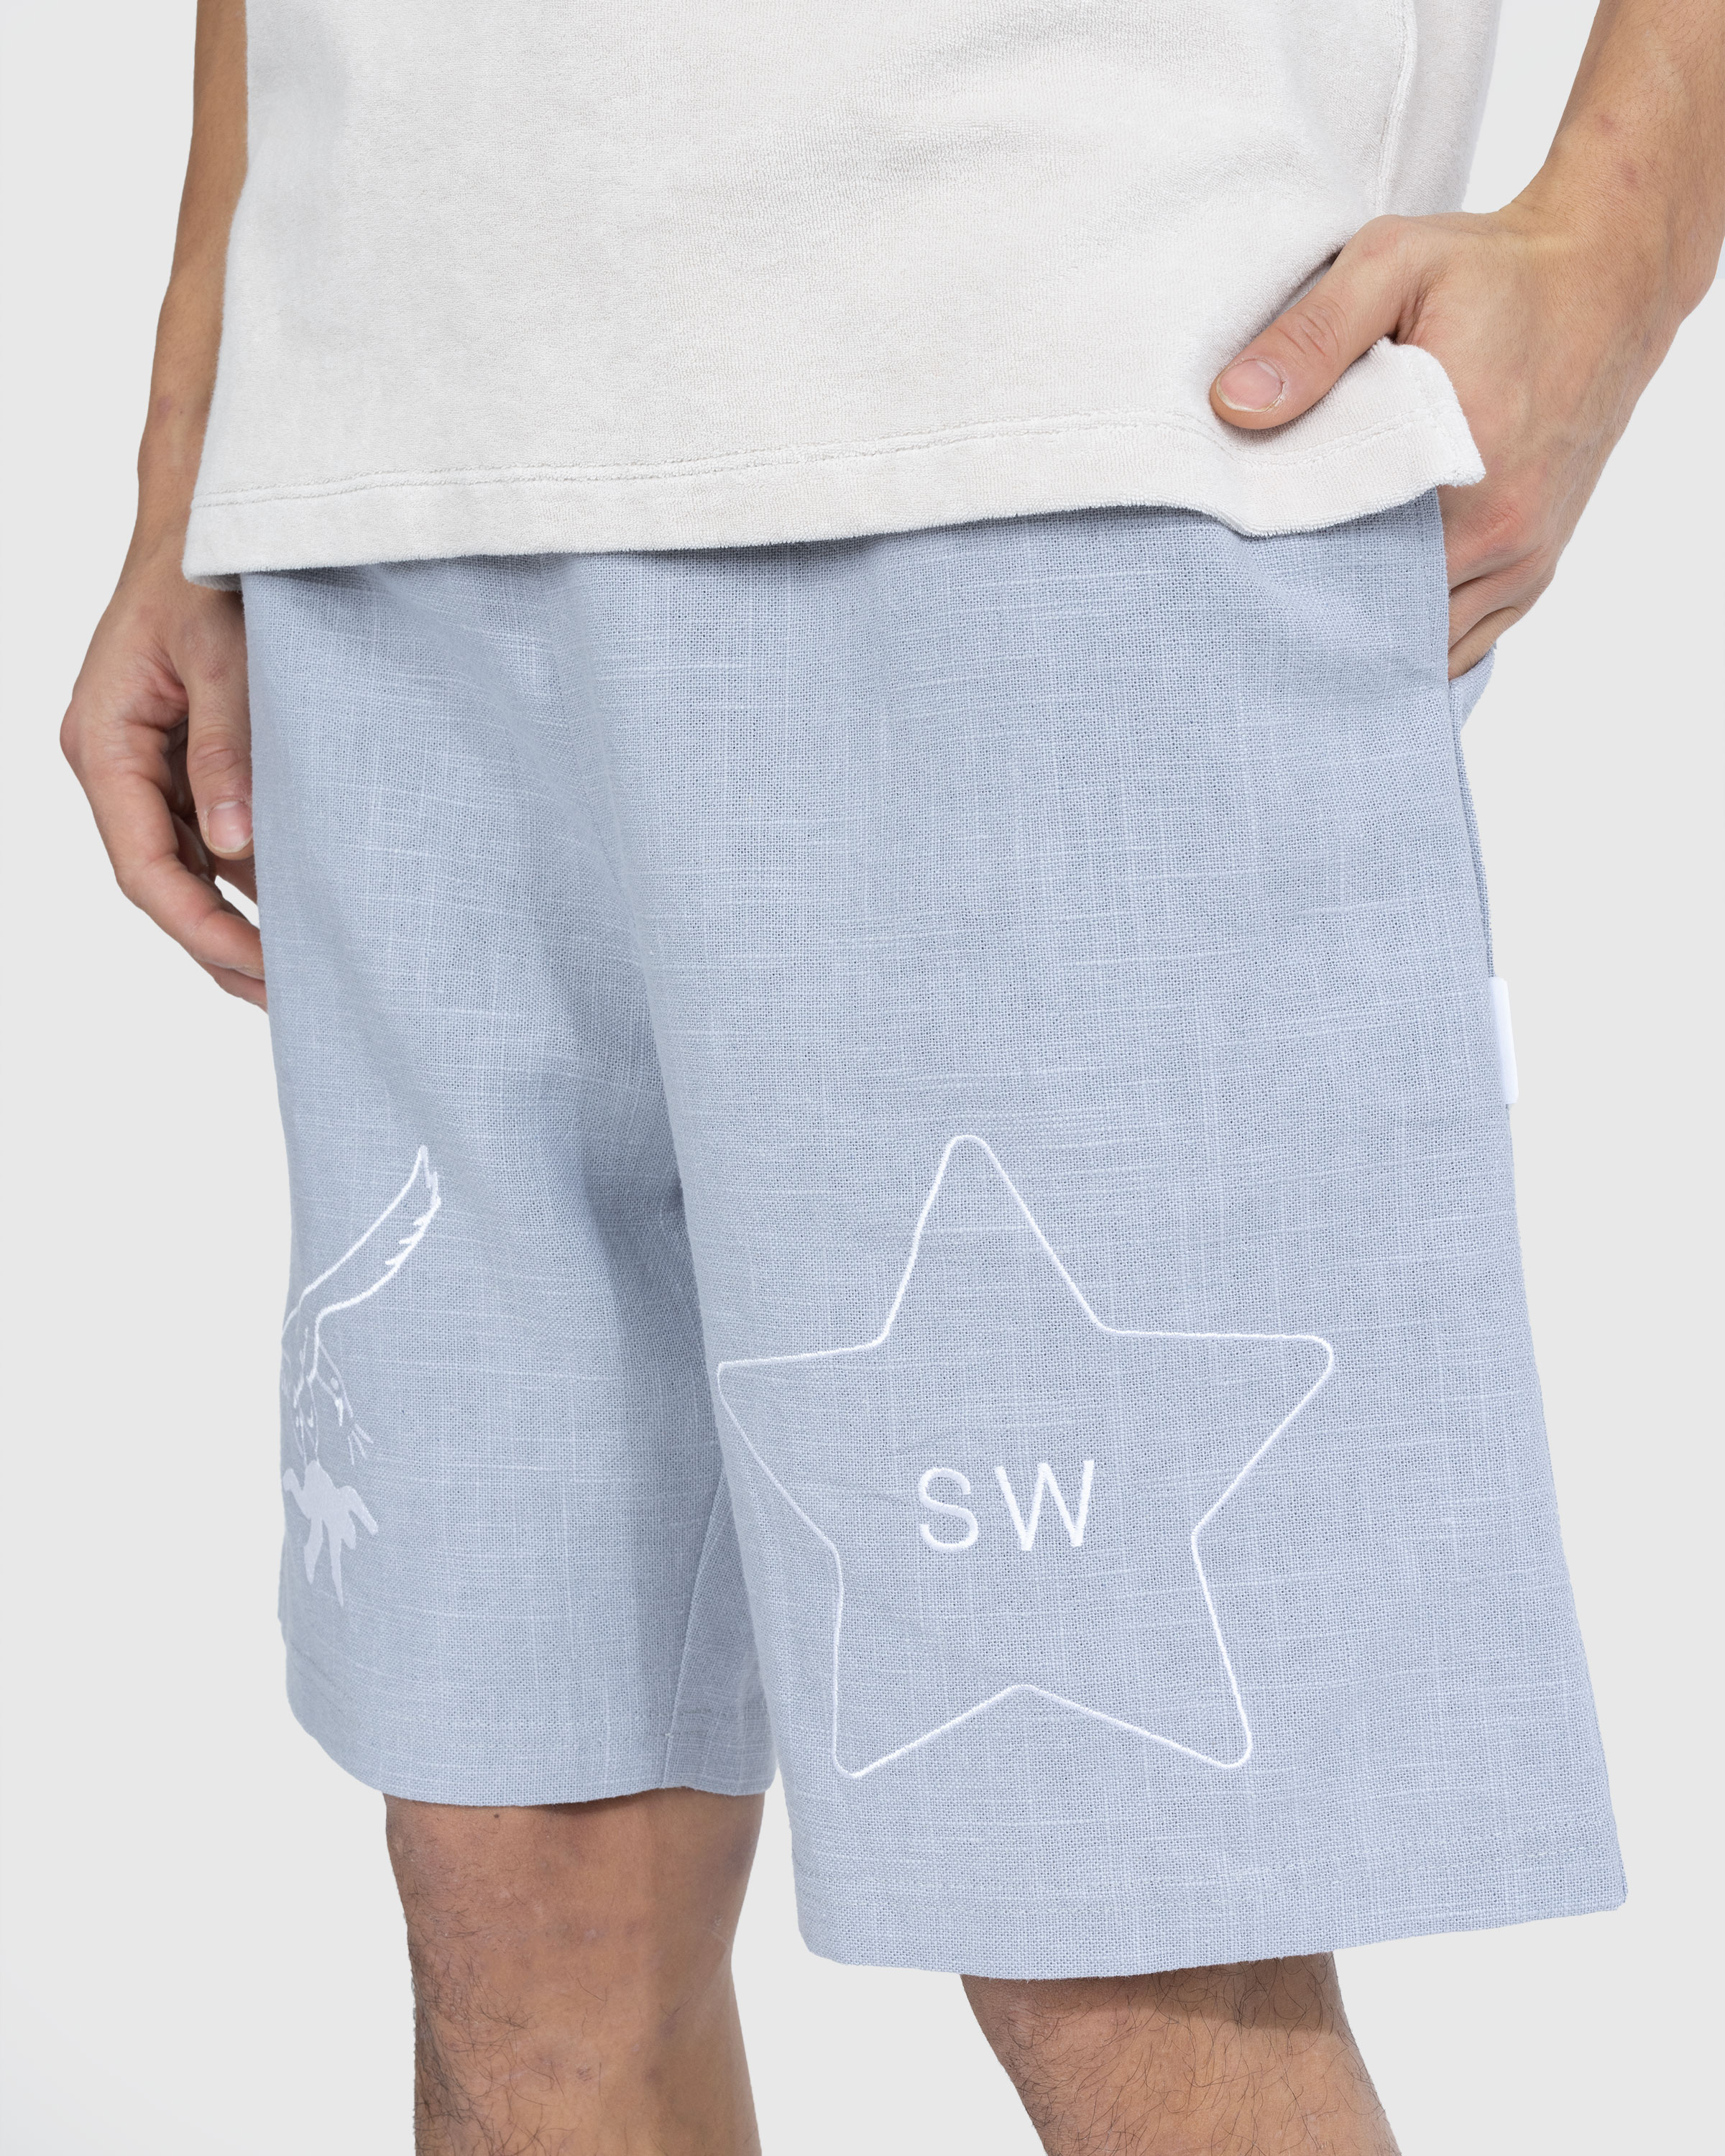 Saintwoods - SW Linen Gym Shorts Light Blue - Clothing - Blue - Image 5